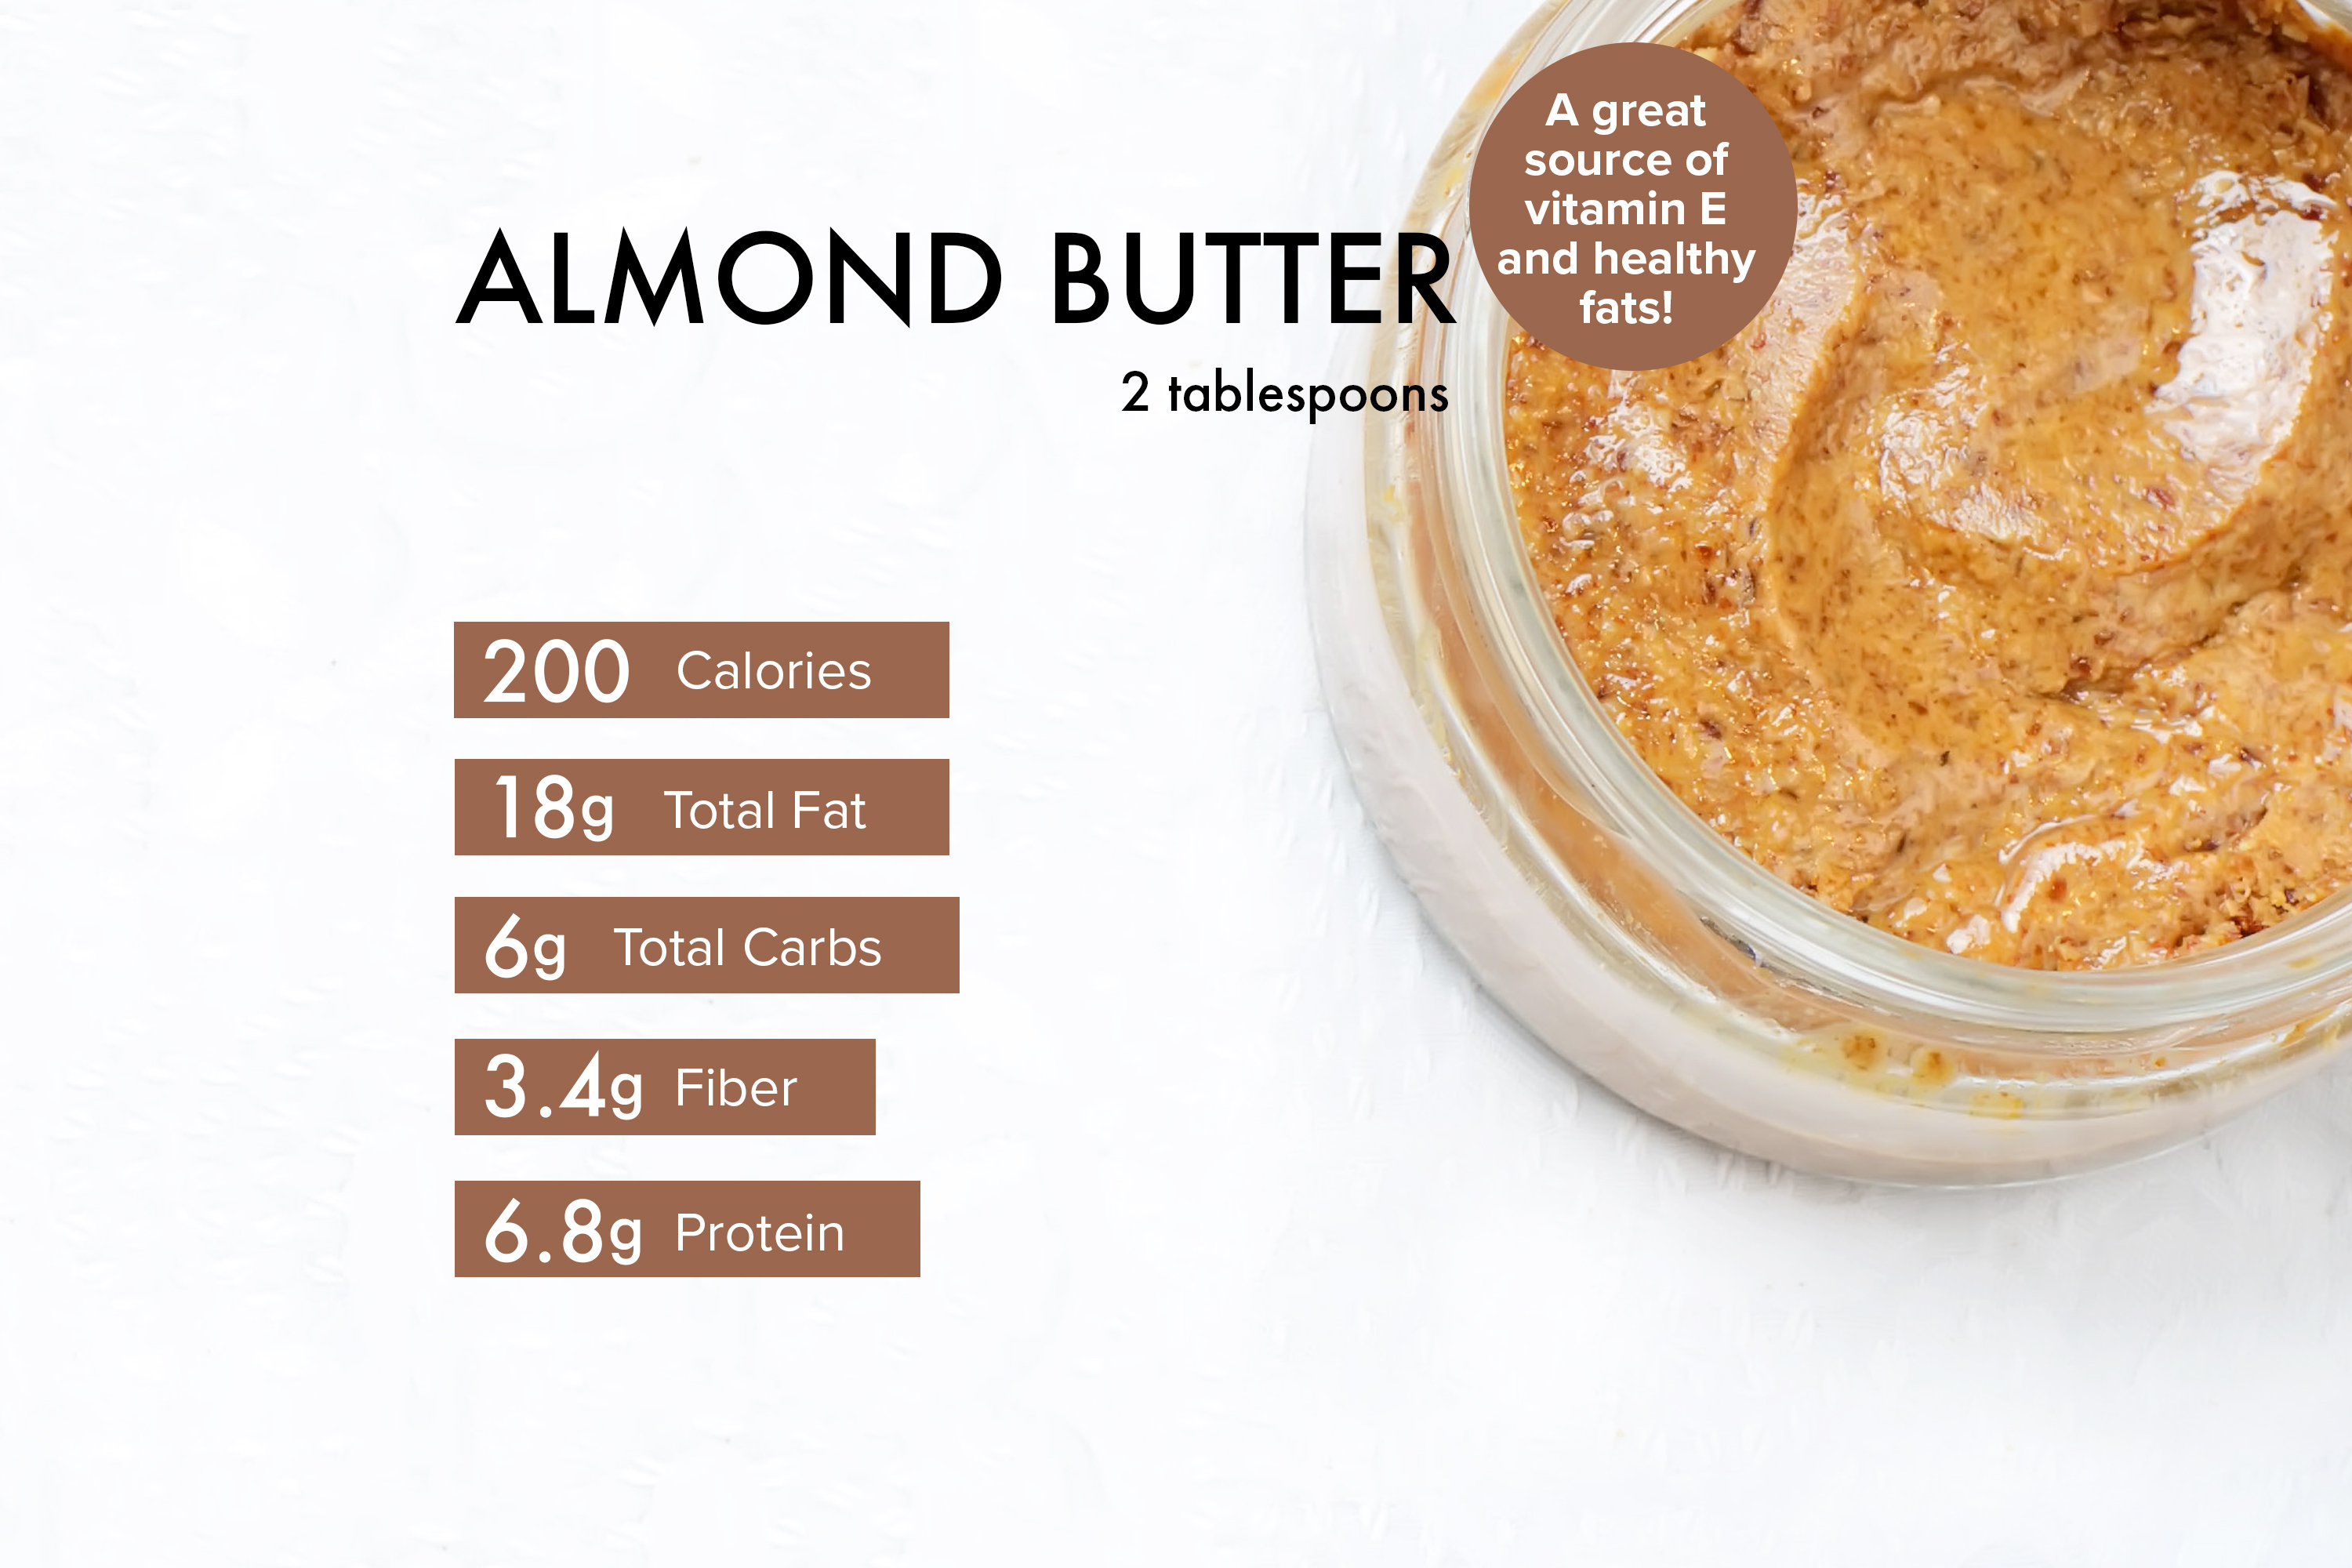 Almond butter benefits